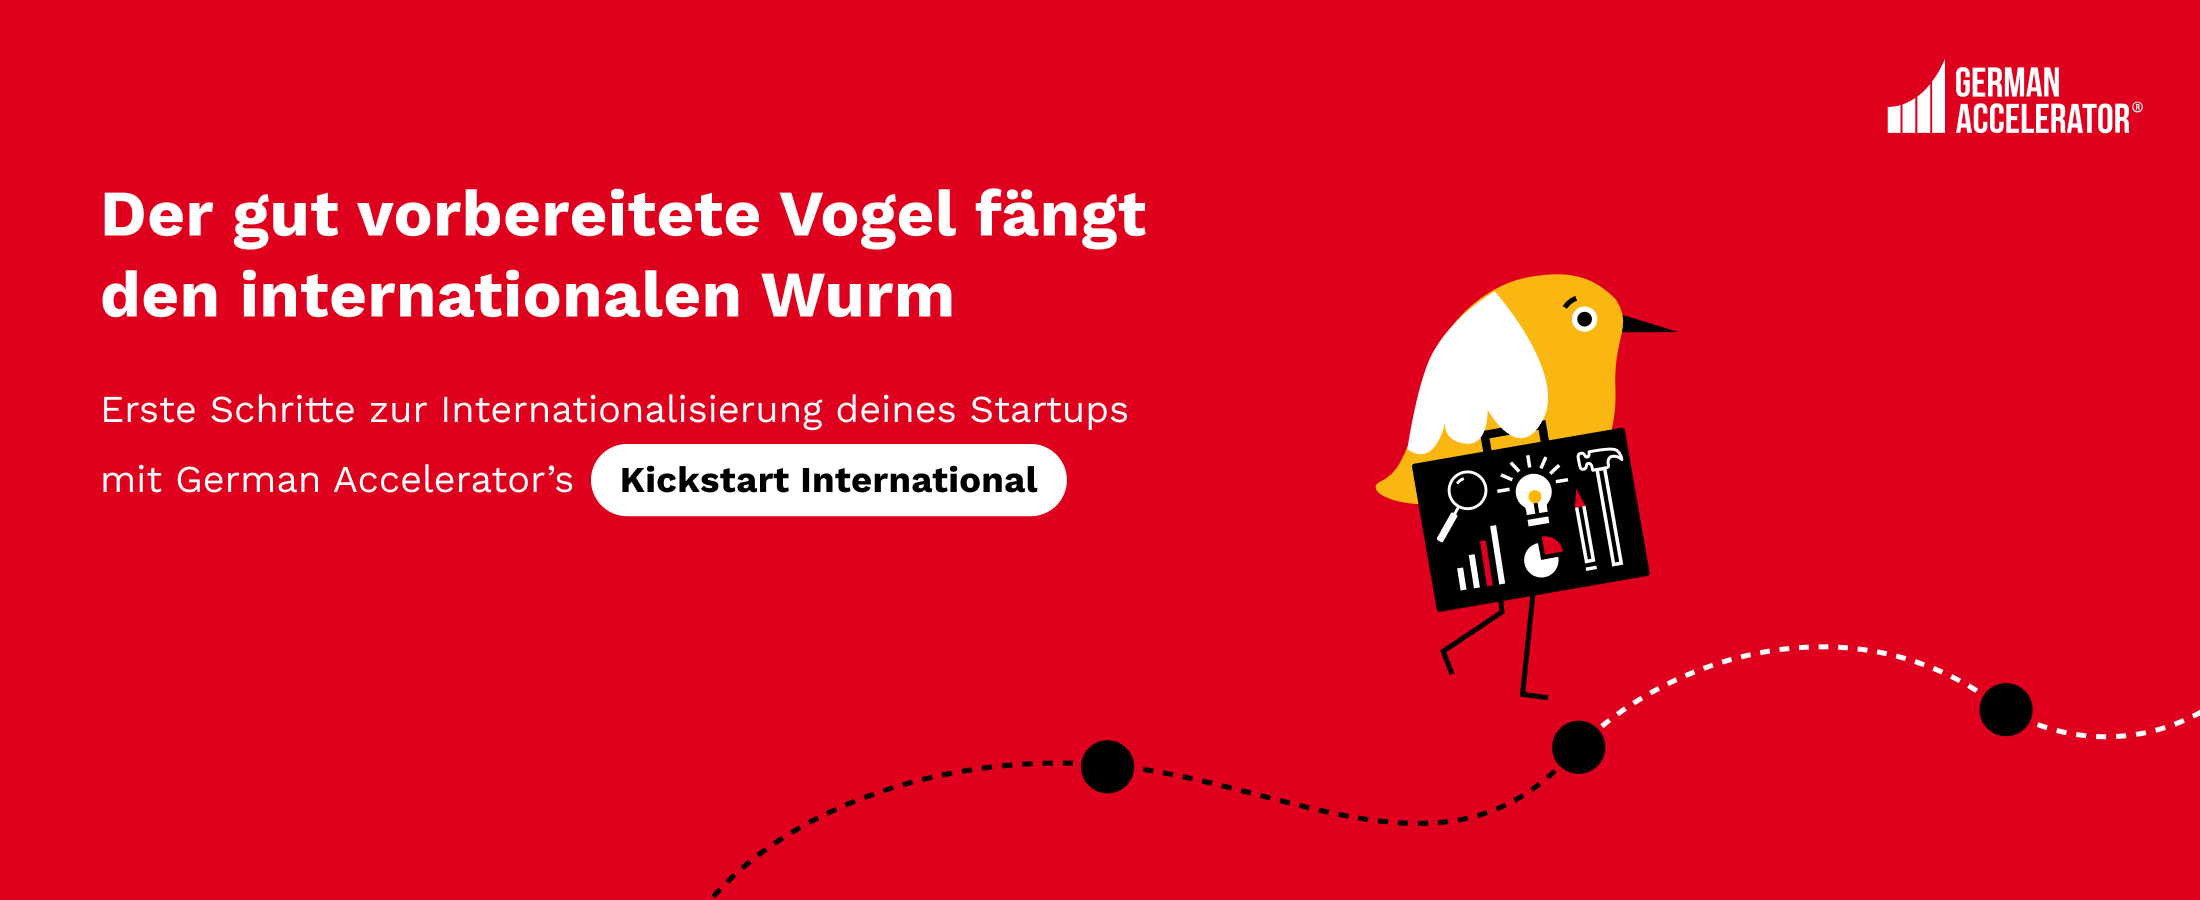 Starthilfe zur Internationalisierung: Kickstart International von German Accelerator